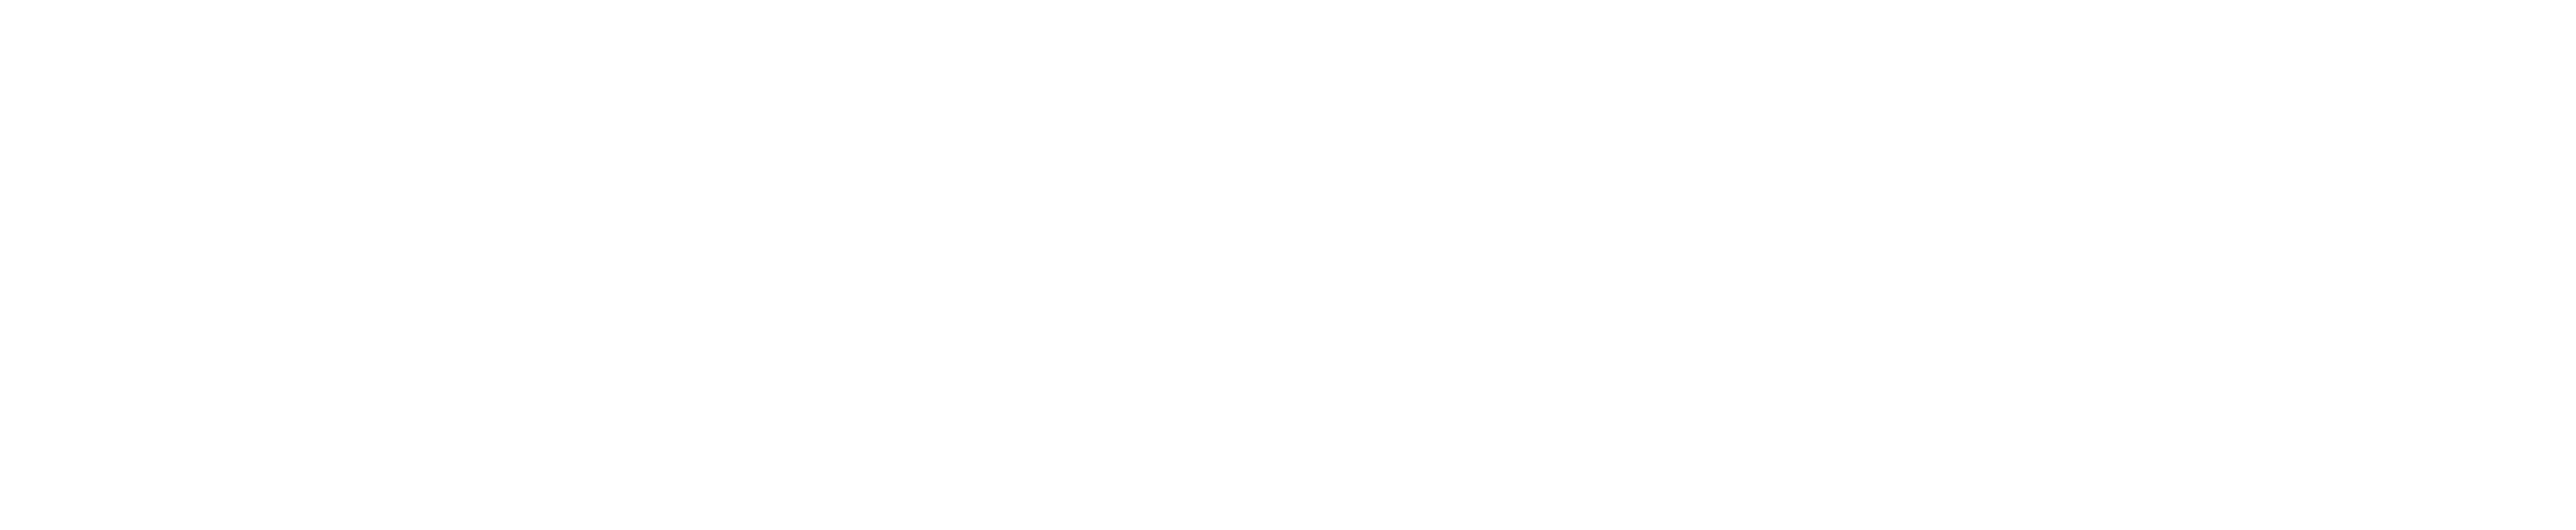 Ignatius Book Club